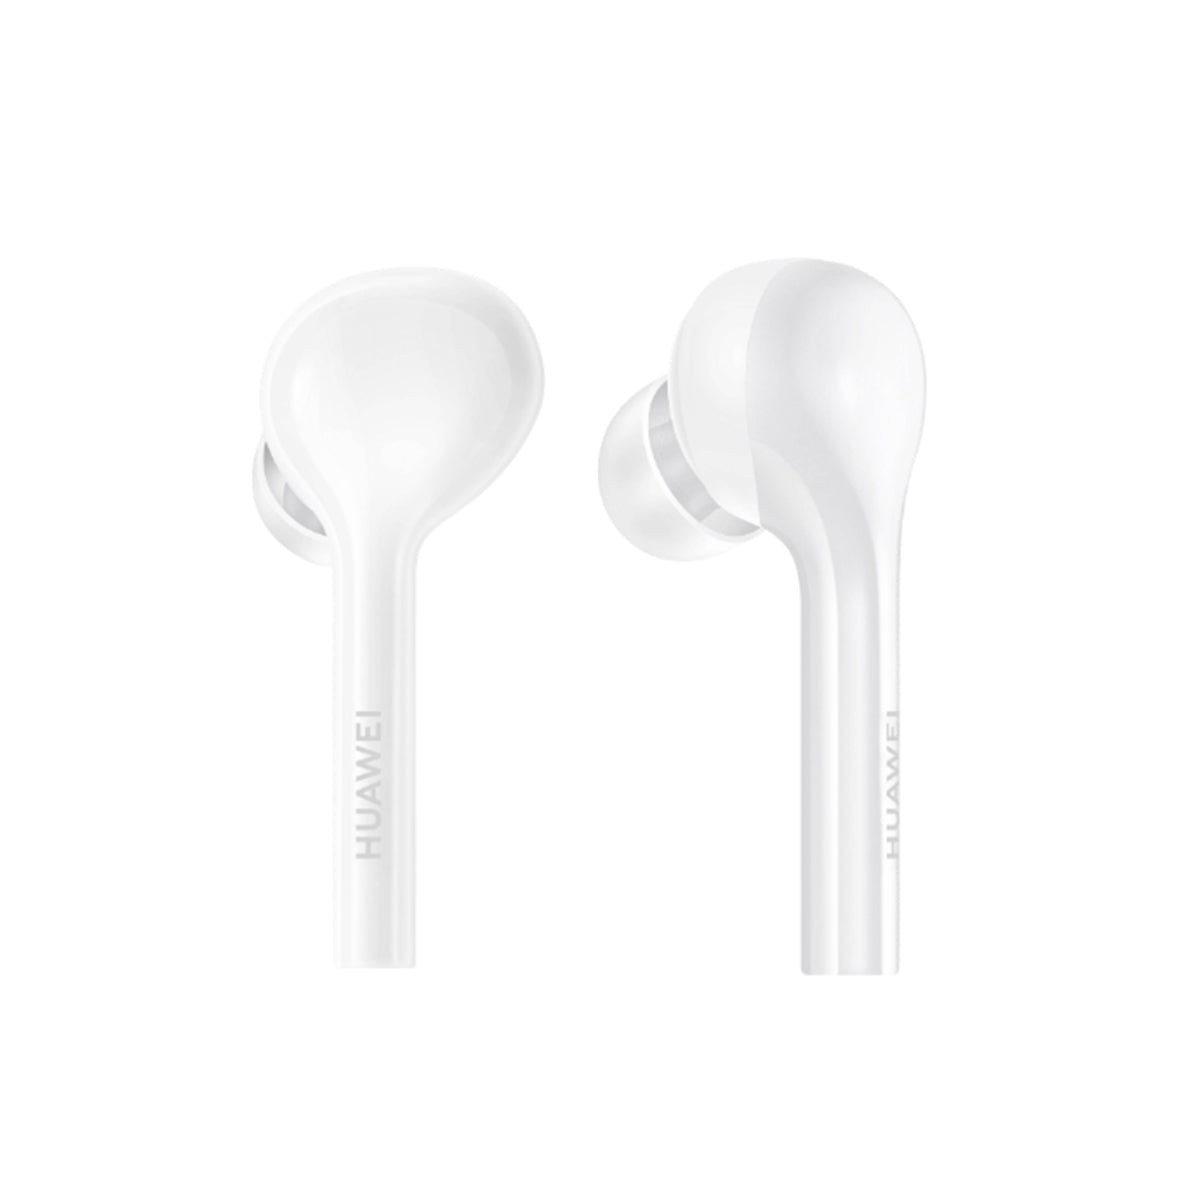 Huawei Freebuds Lite: auriculares internos con Bluetooth, cancelación de ruido y protección a prueba de agua - Huawei Freebuds Lite: in-ear headphones with Bluetooth, noise cancellation and waterproof protection